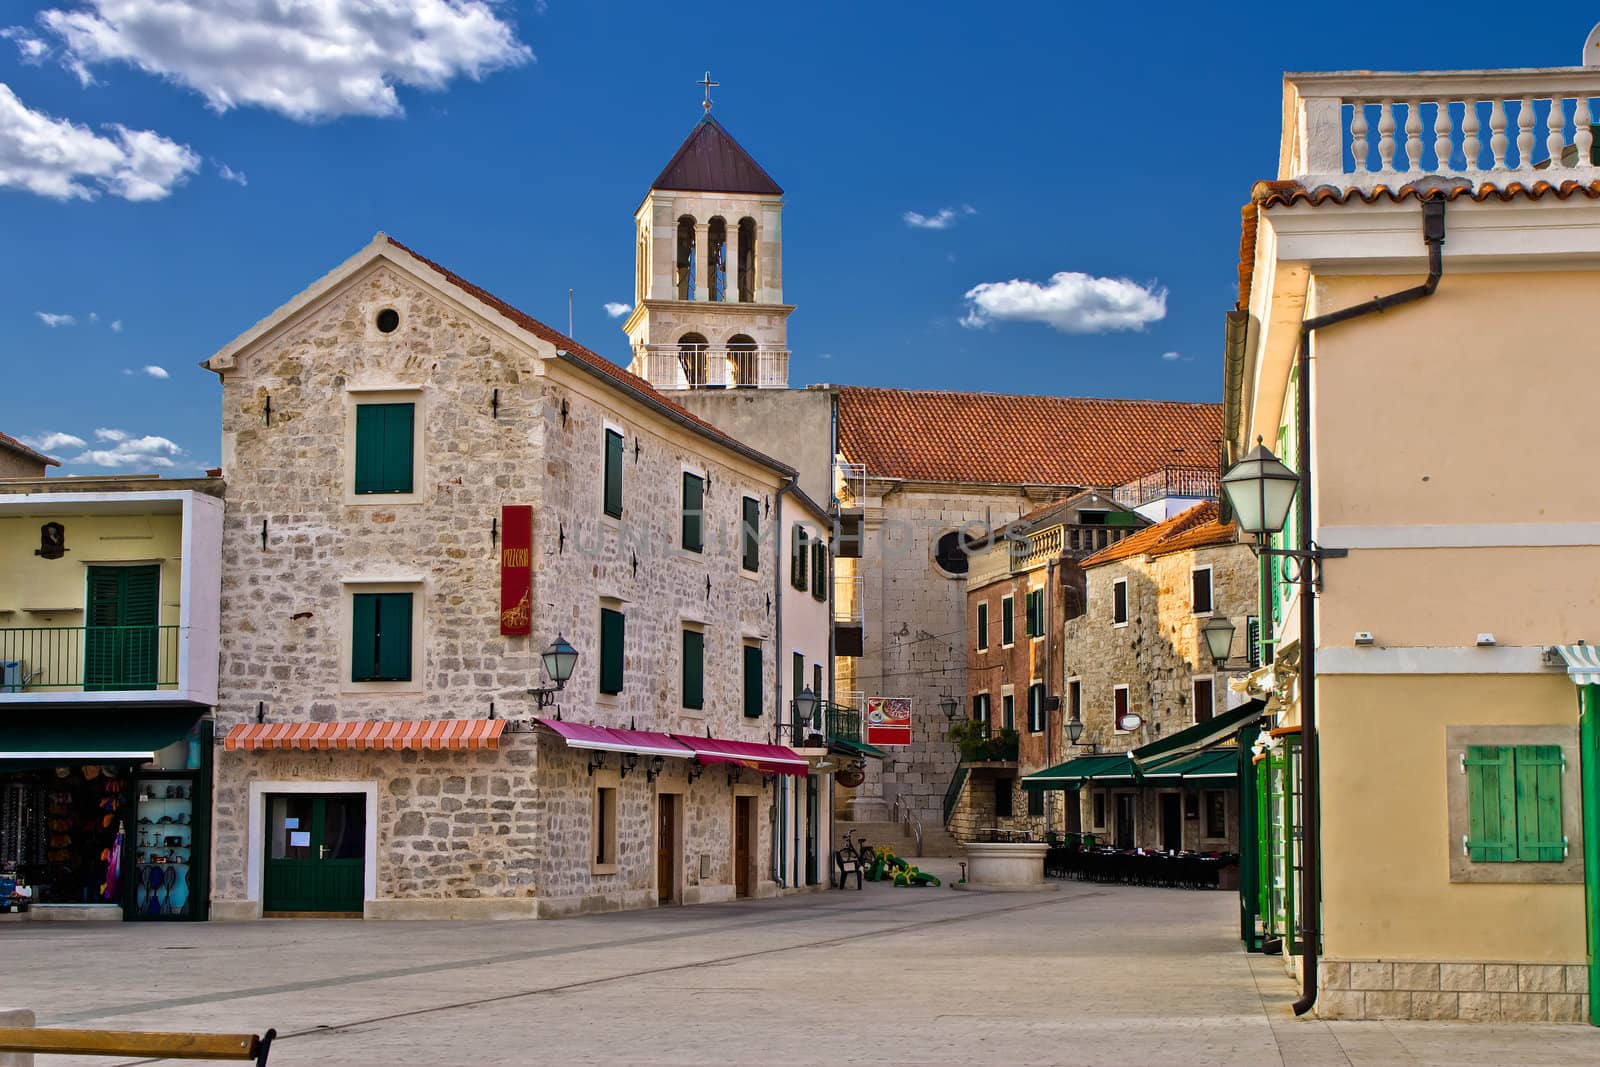 Adriatic Town of Vodice promenade, Croatia